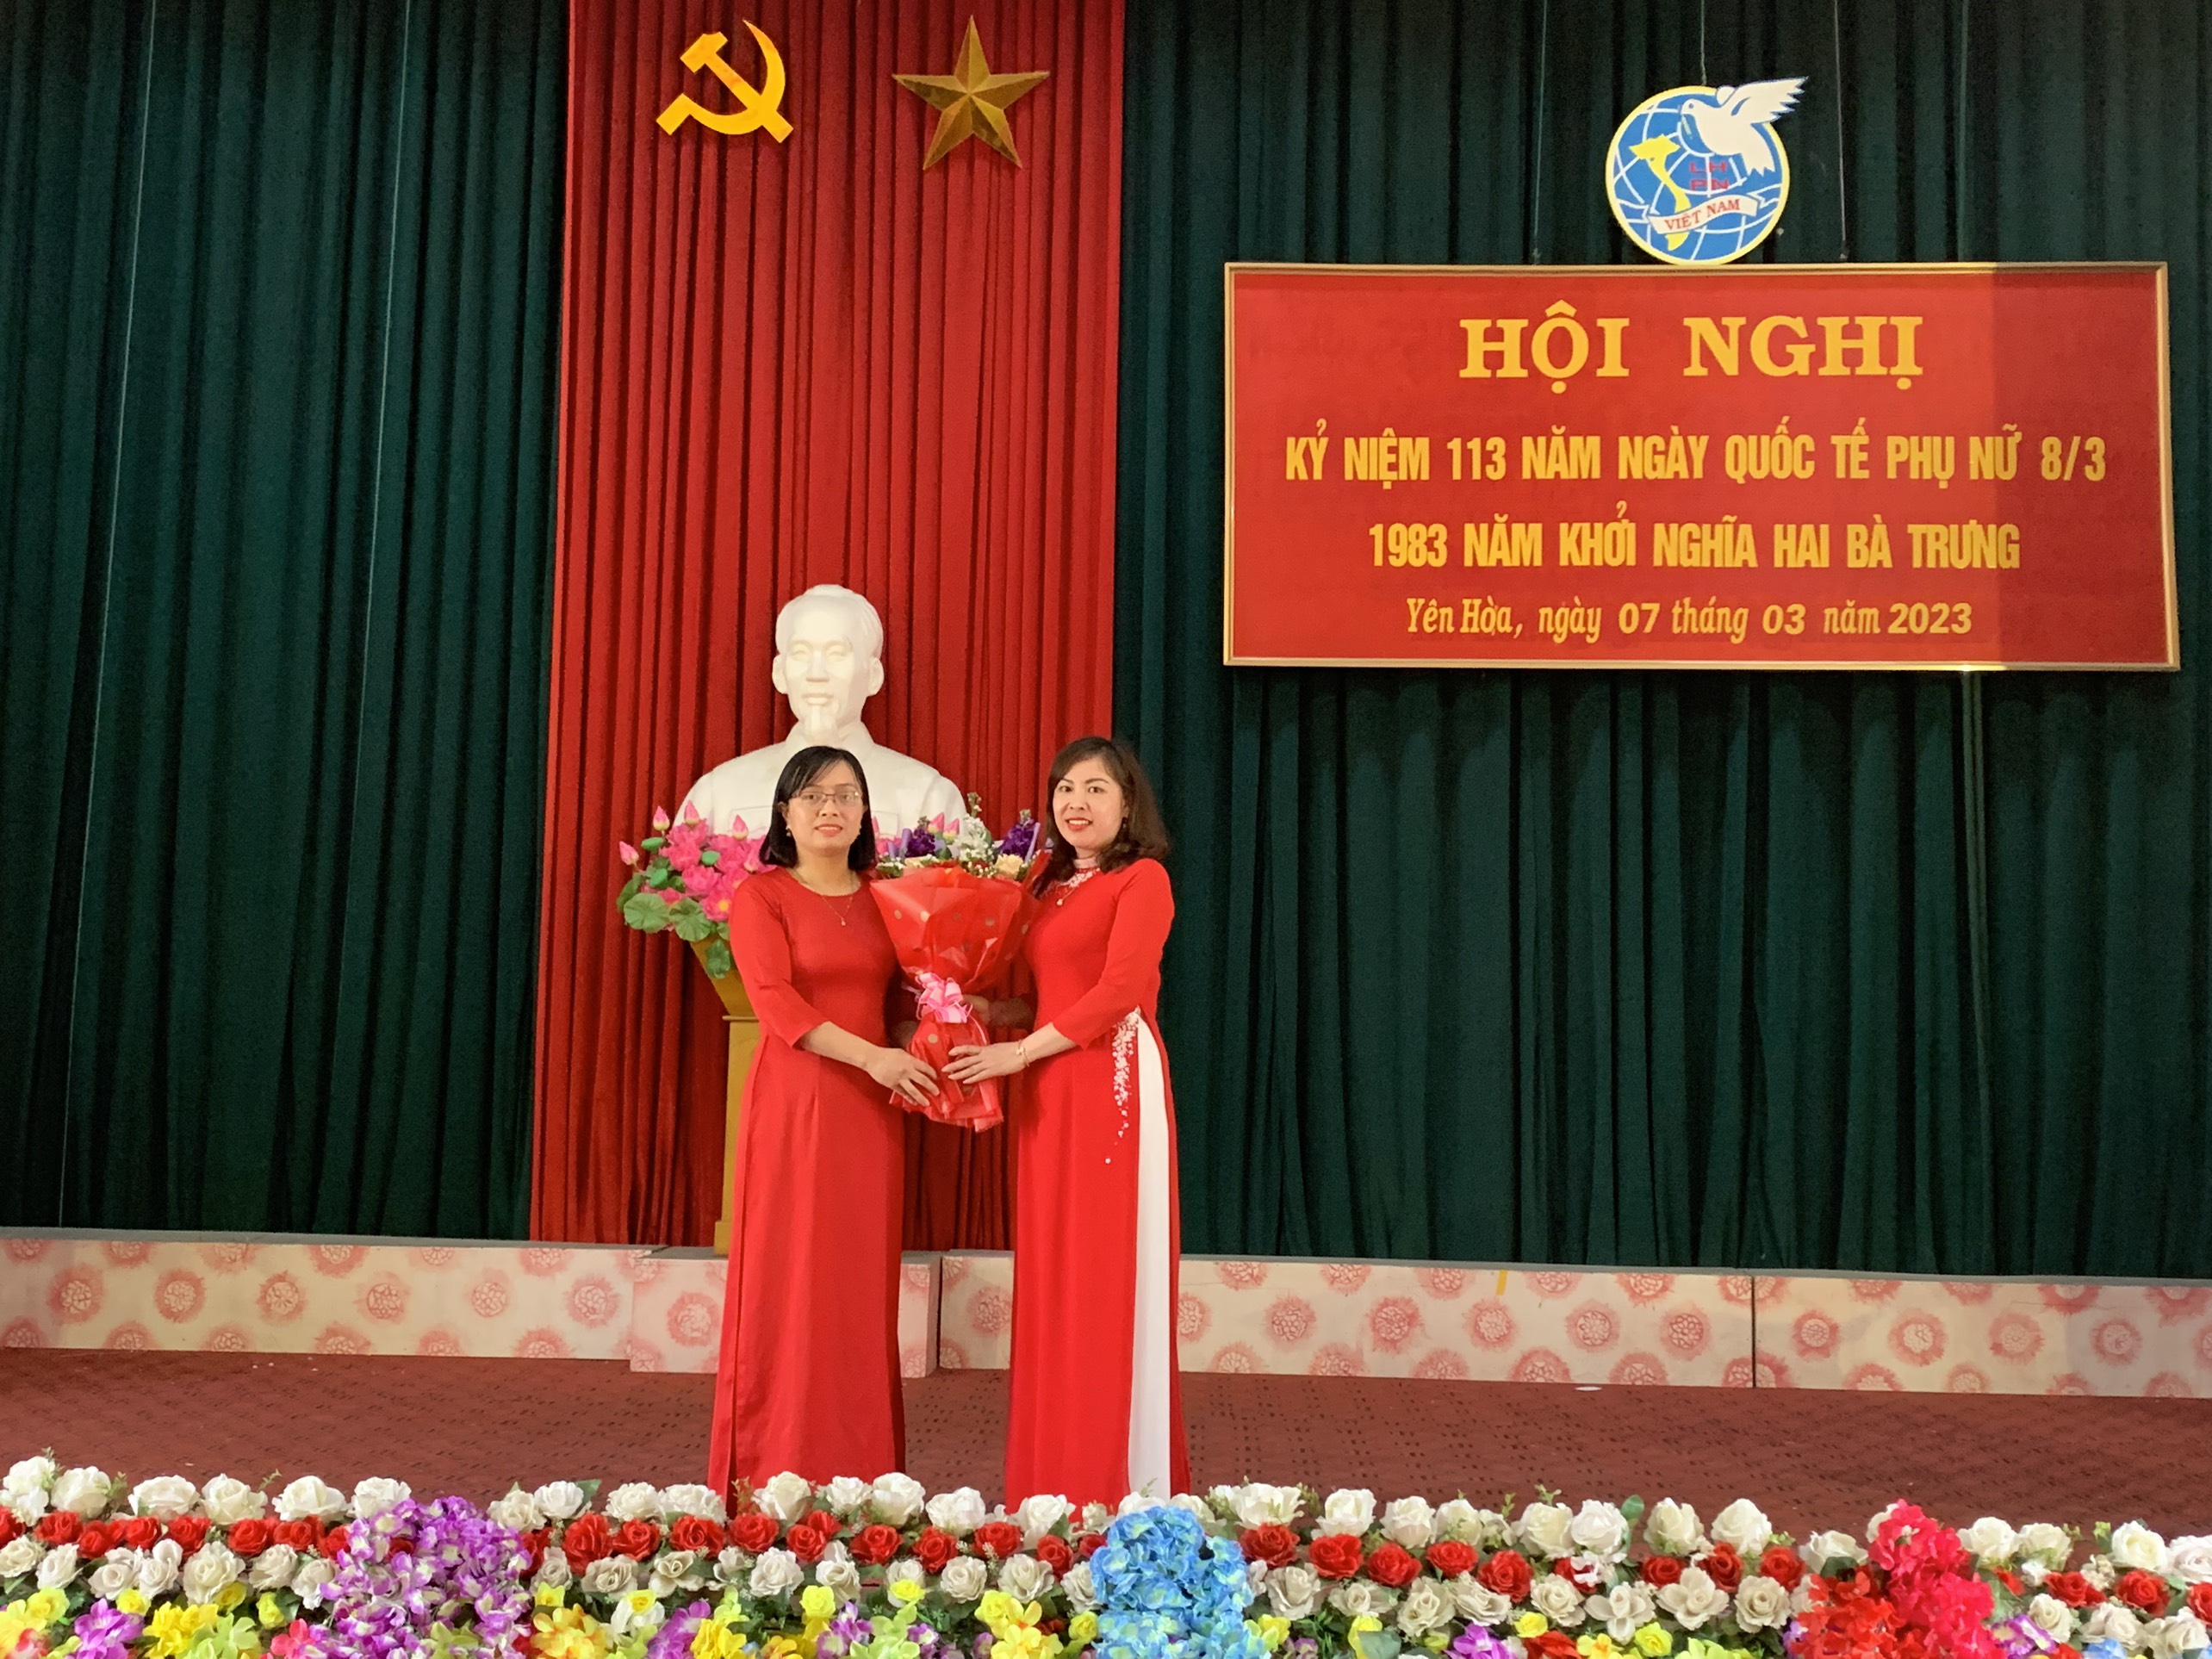 Hội Liên hiệp phụ nữ xã Yên Hòa tổ chức kỷ niệm 113 năm ngày Quốc tế phụ nữ mùng 8 tháng 3 và 1983 năm Khởi nghĩa Hai Bà Trưng.